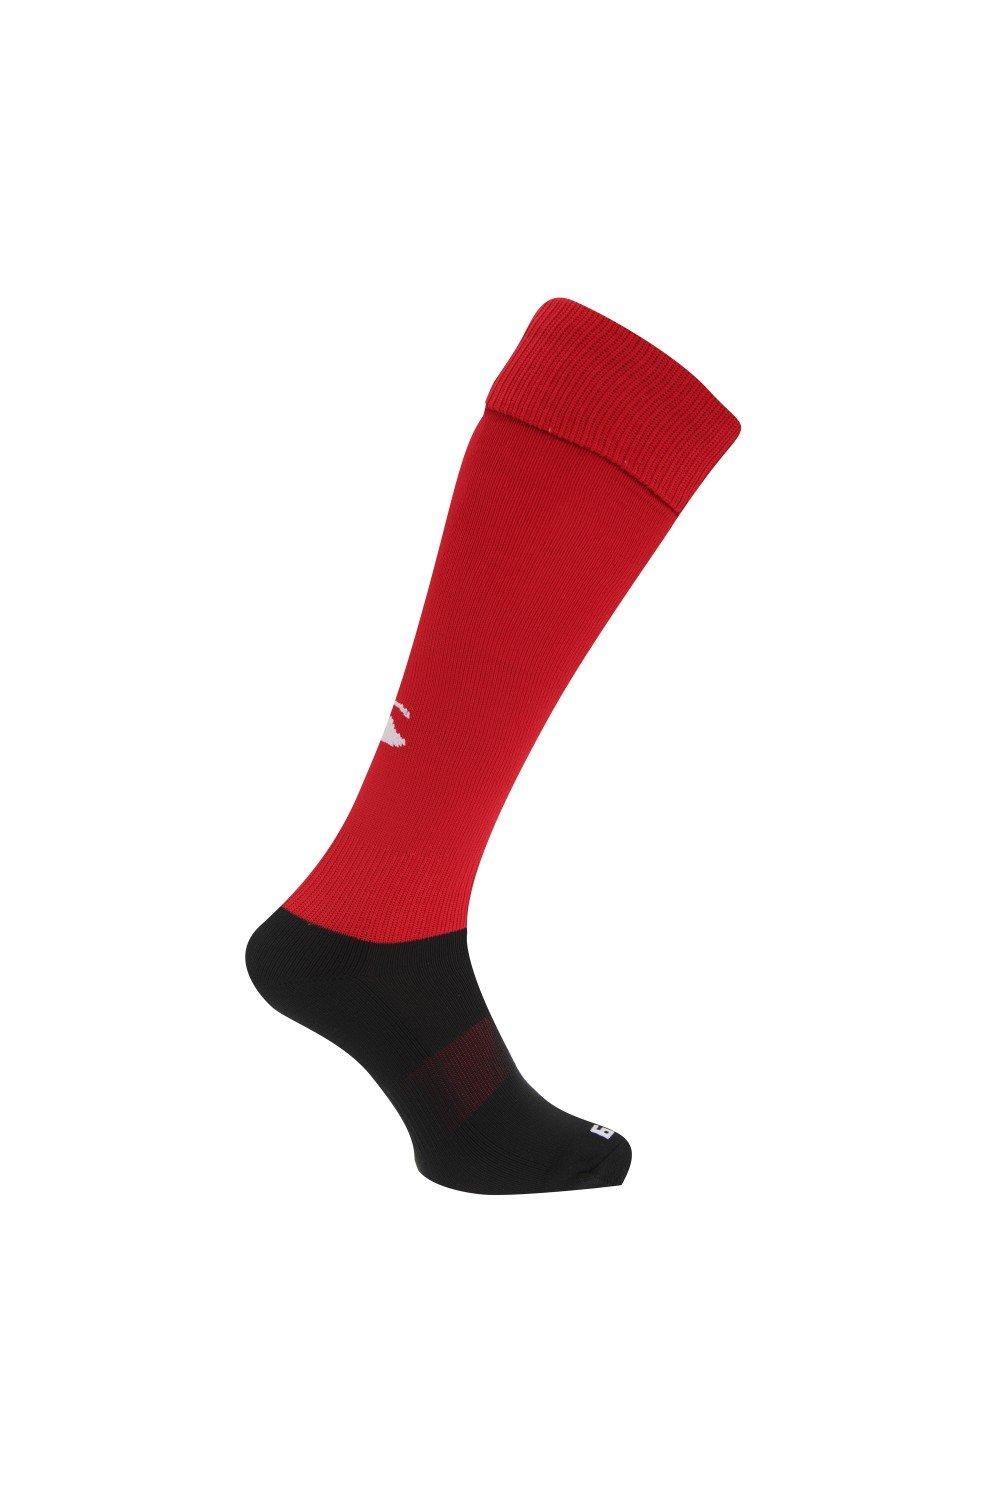 Спортивные носки для игры в регби Canterbury, красный чёрные спортивные брюки overcome с контрастными деталями